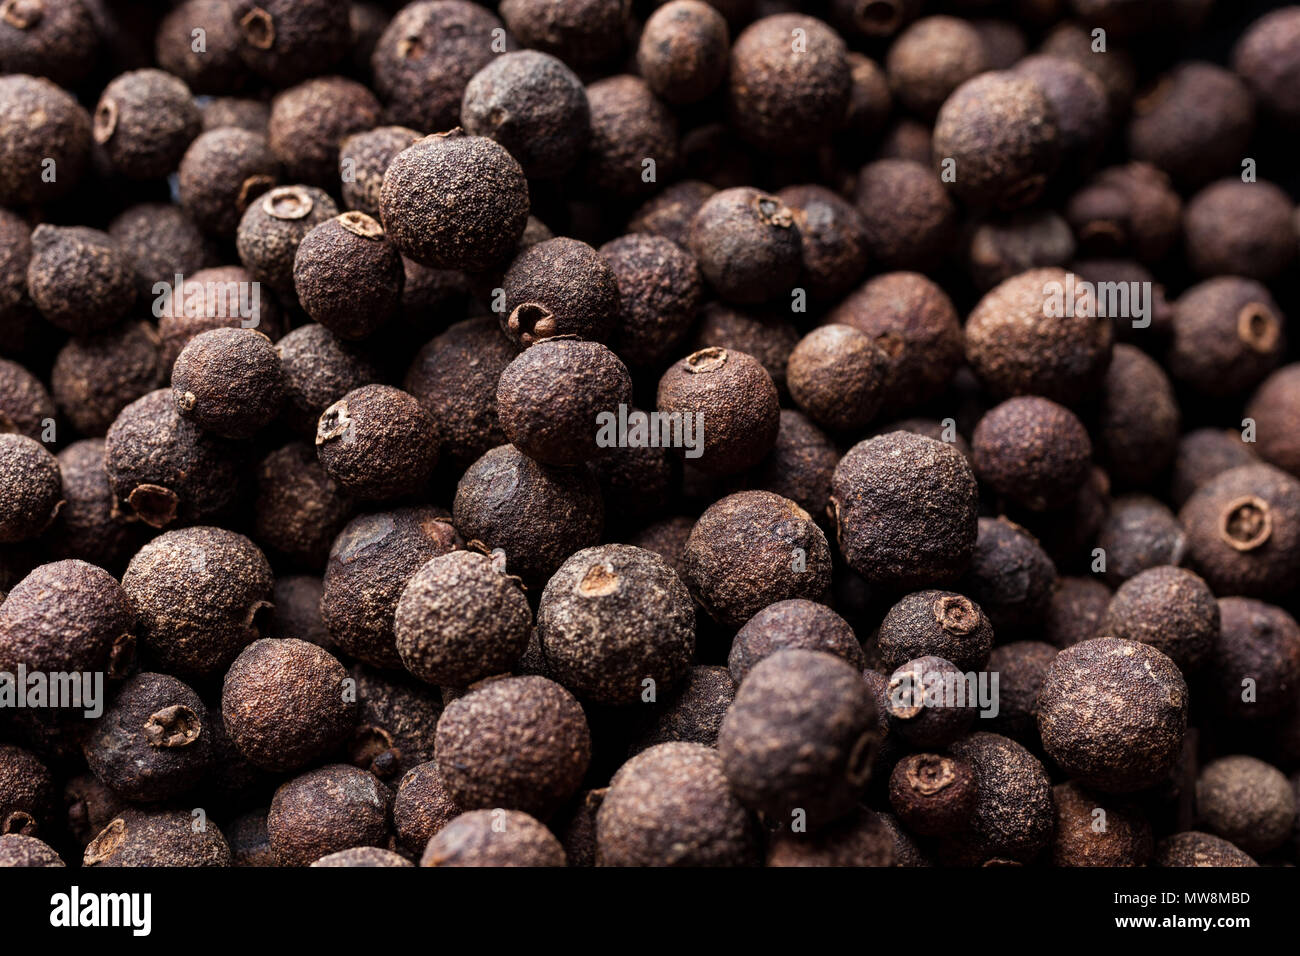 Piment englisch Pfeffer Beeren auf von oben closeup Stockfotografie - Alamy